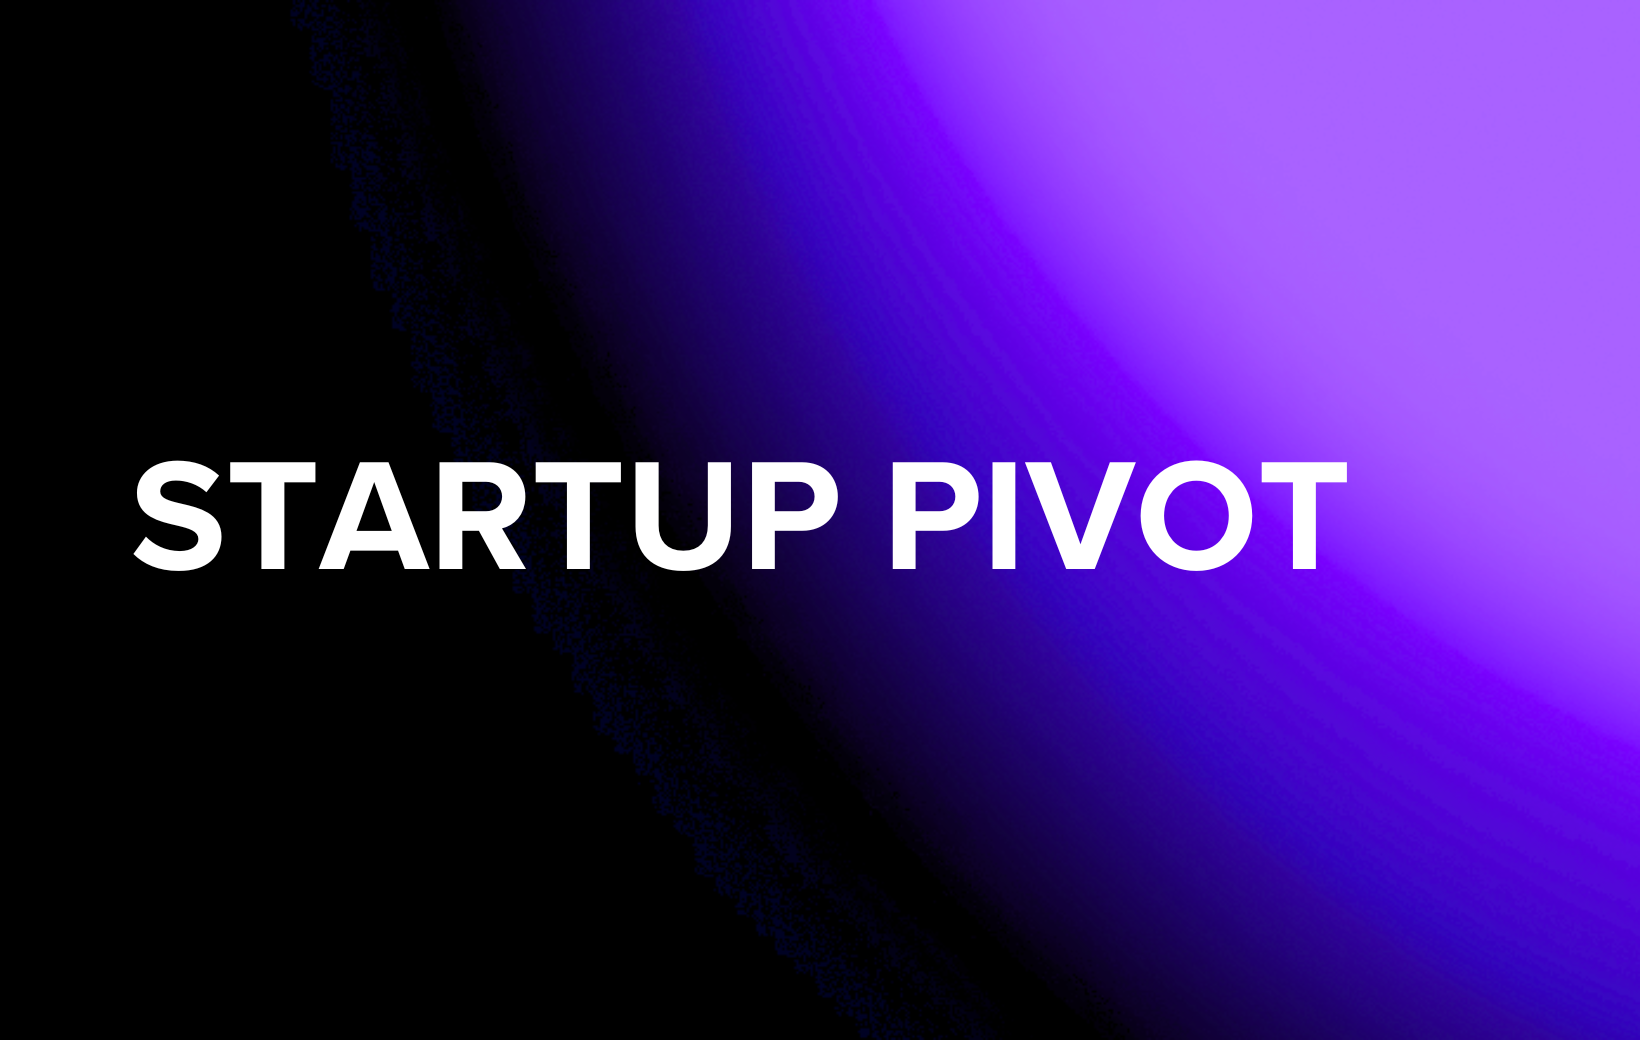 StartUp Pivot